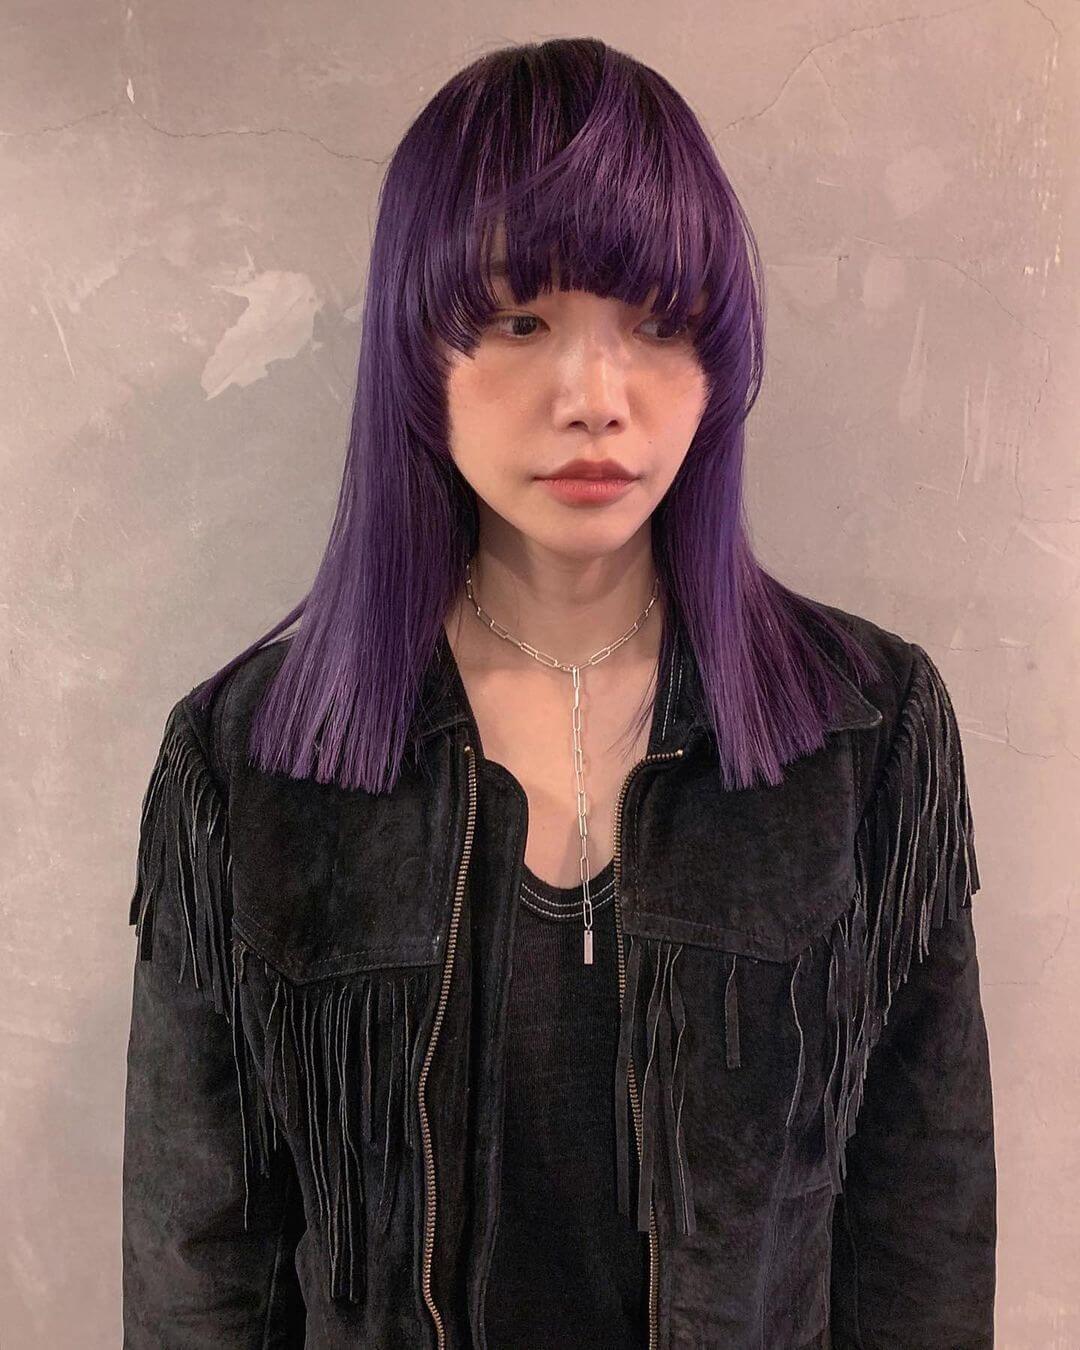 ヘアカラー紫の髪色・マッシュバングのセミロング